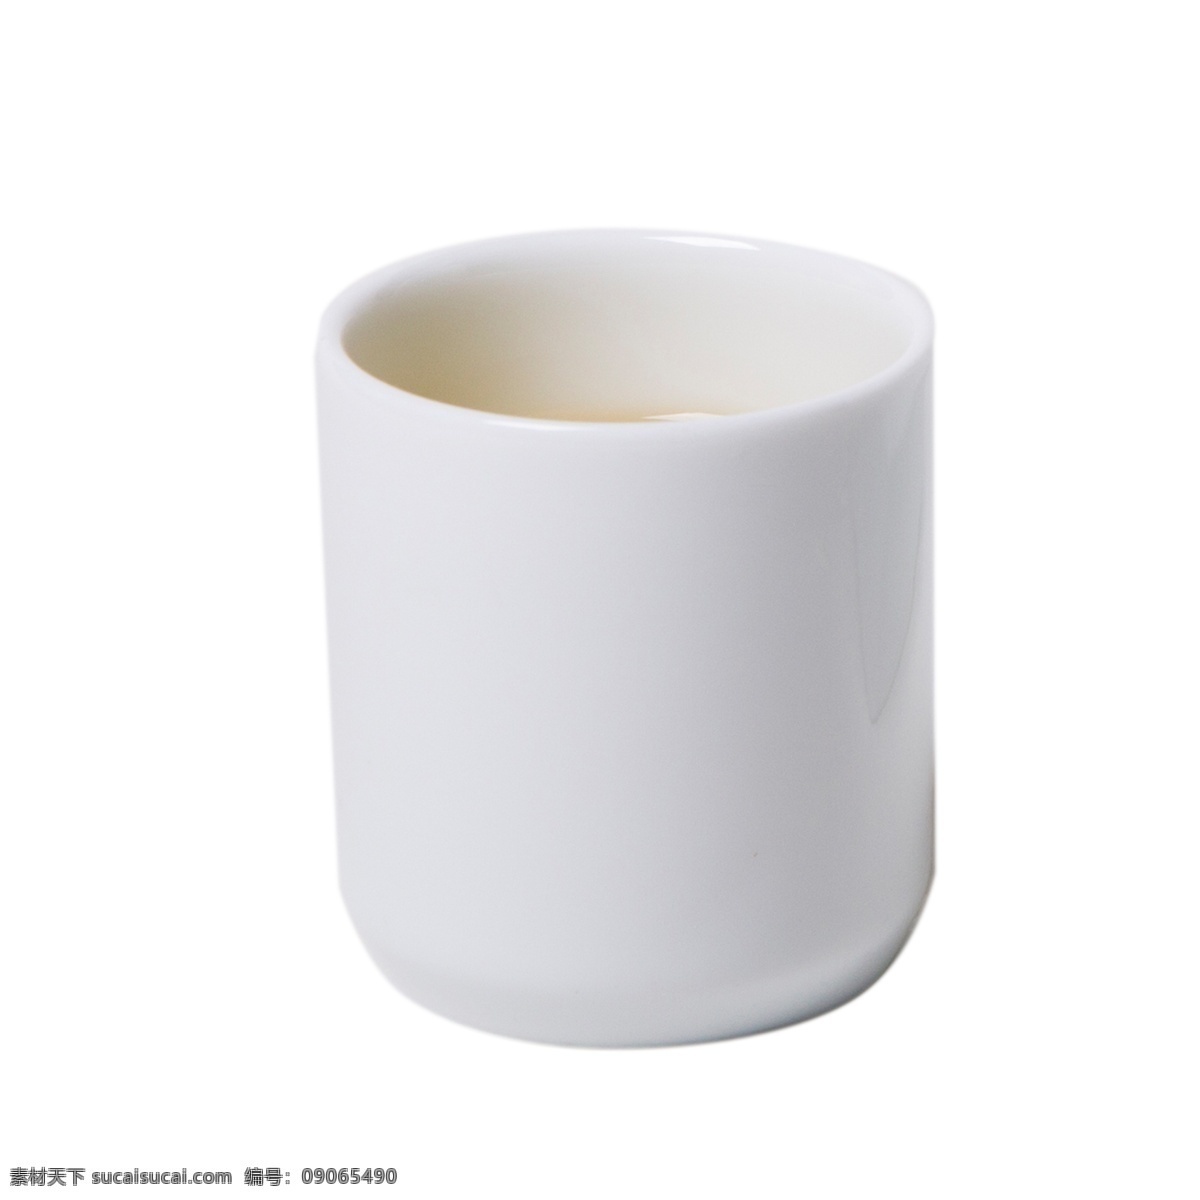 白色 圆柱 茶杯 元素 创意 杯子 立体 投影 深度 高光 质感 圆弧 容器 真实 反光 倒影 餐具